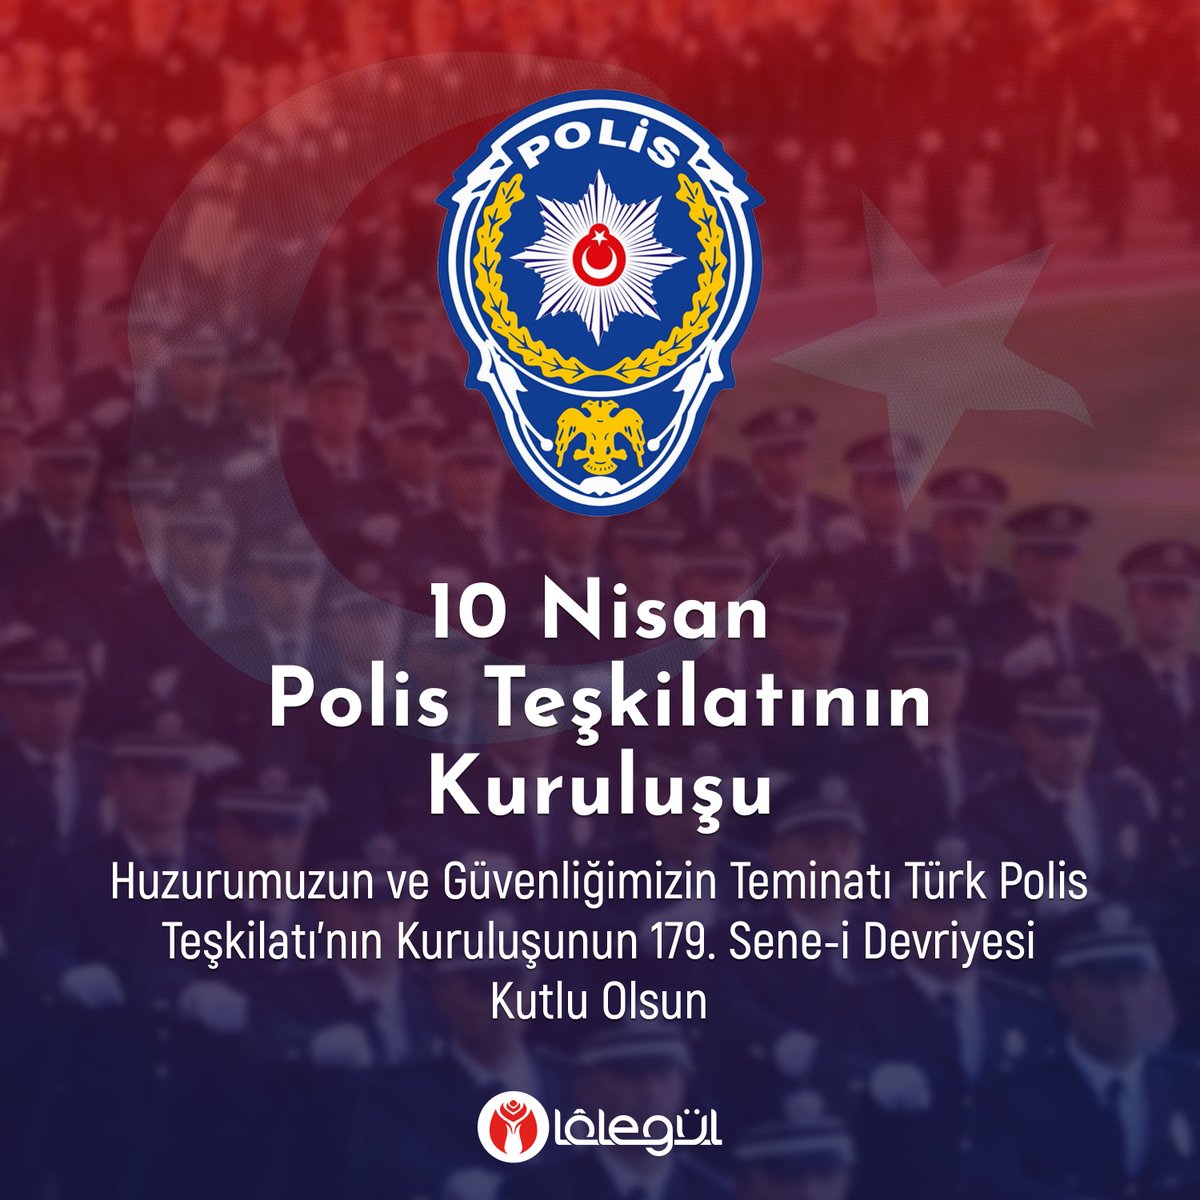 Huzurumuzun ve Güvenliğimizin Teminatı Türk Polis Teşkilatı’nın Kuruluşunun 179. Sene-i Devriyesi Kutlu Olsun